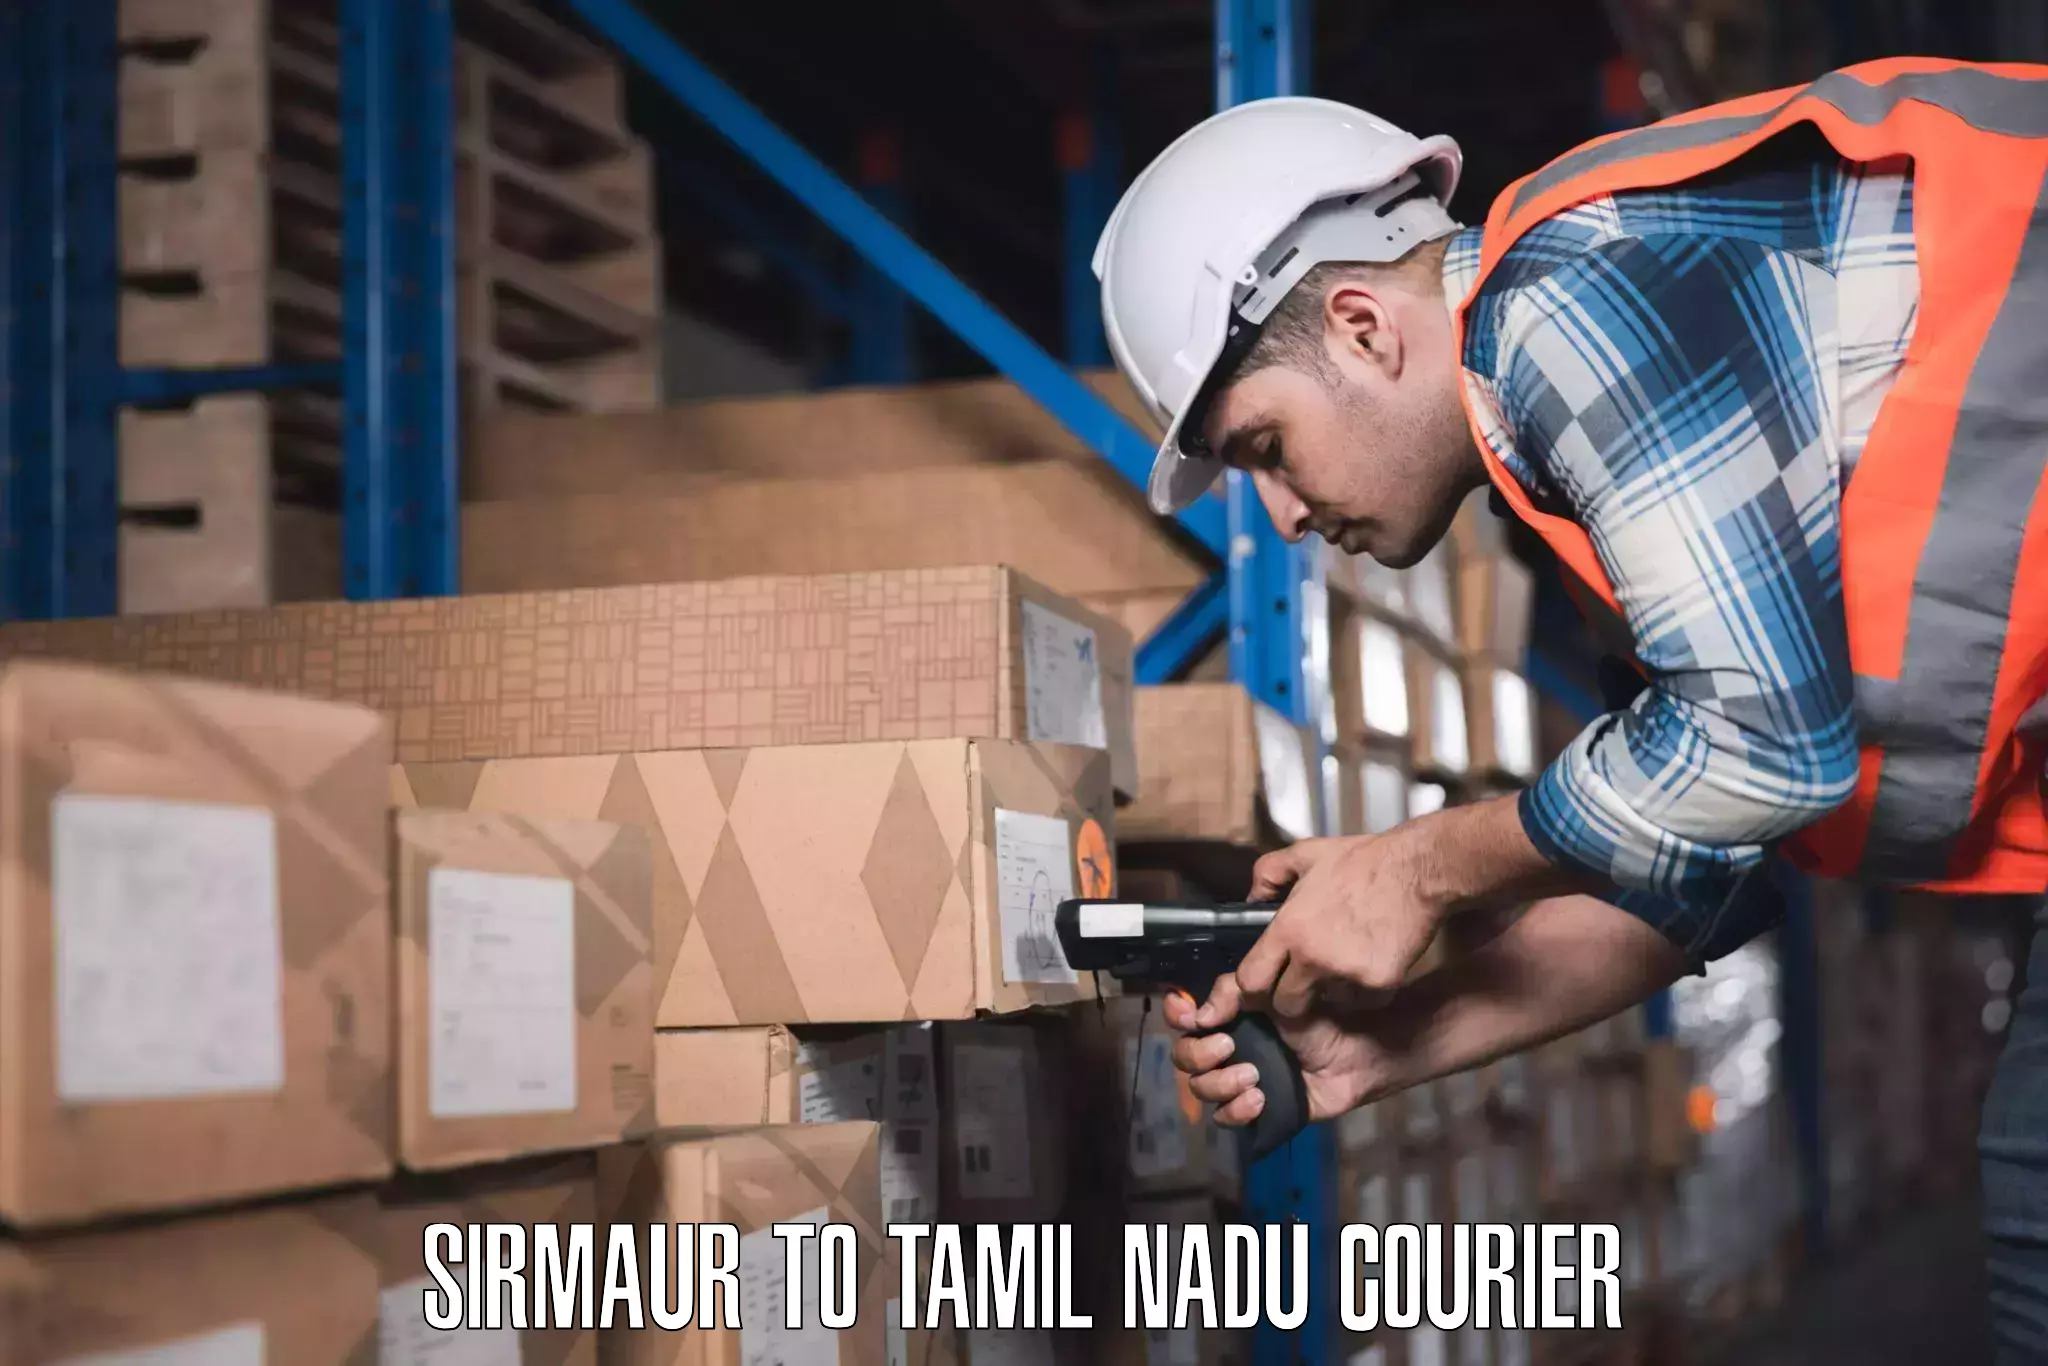 Luggage courier network Sirmaur to Nilakottai